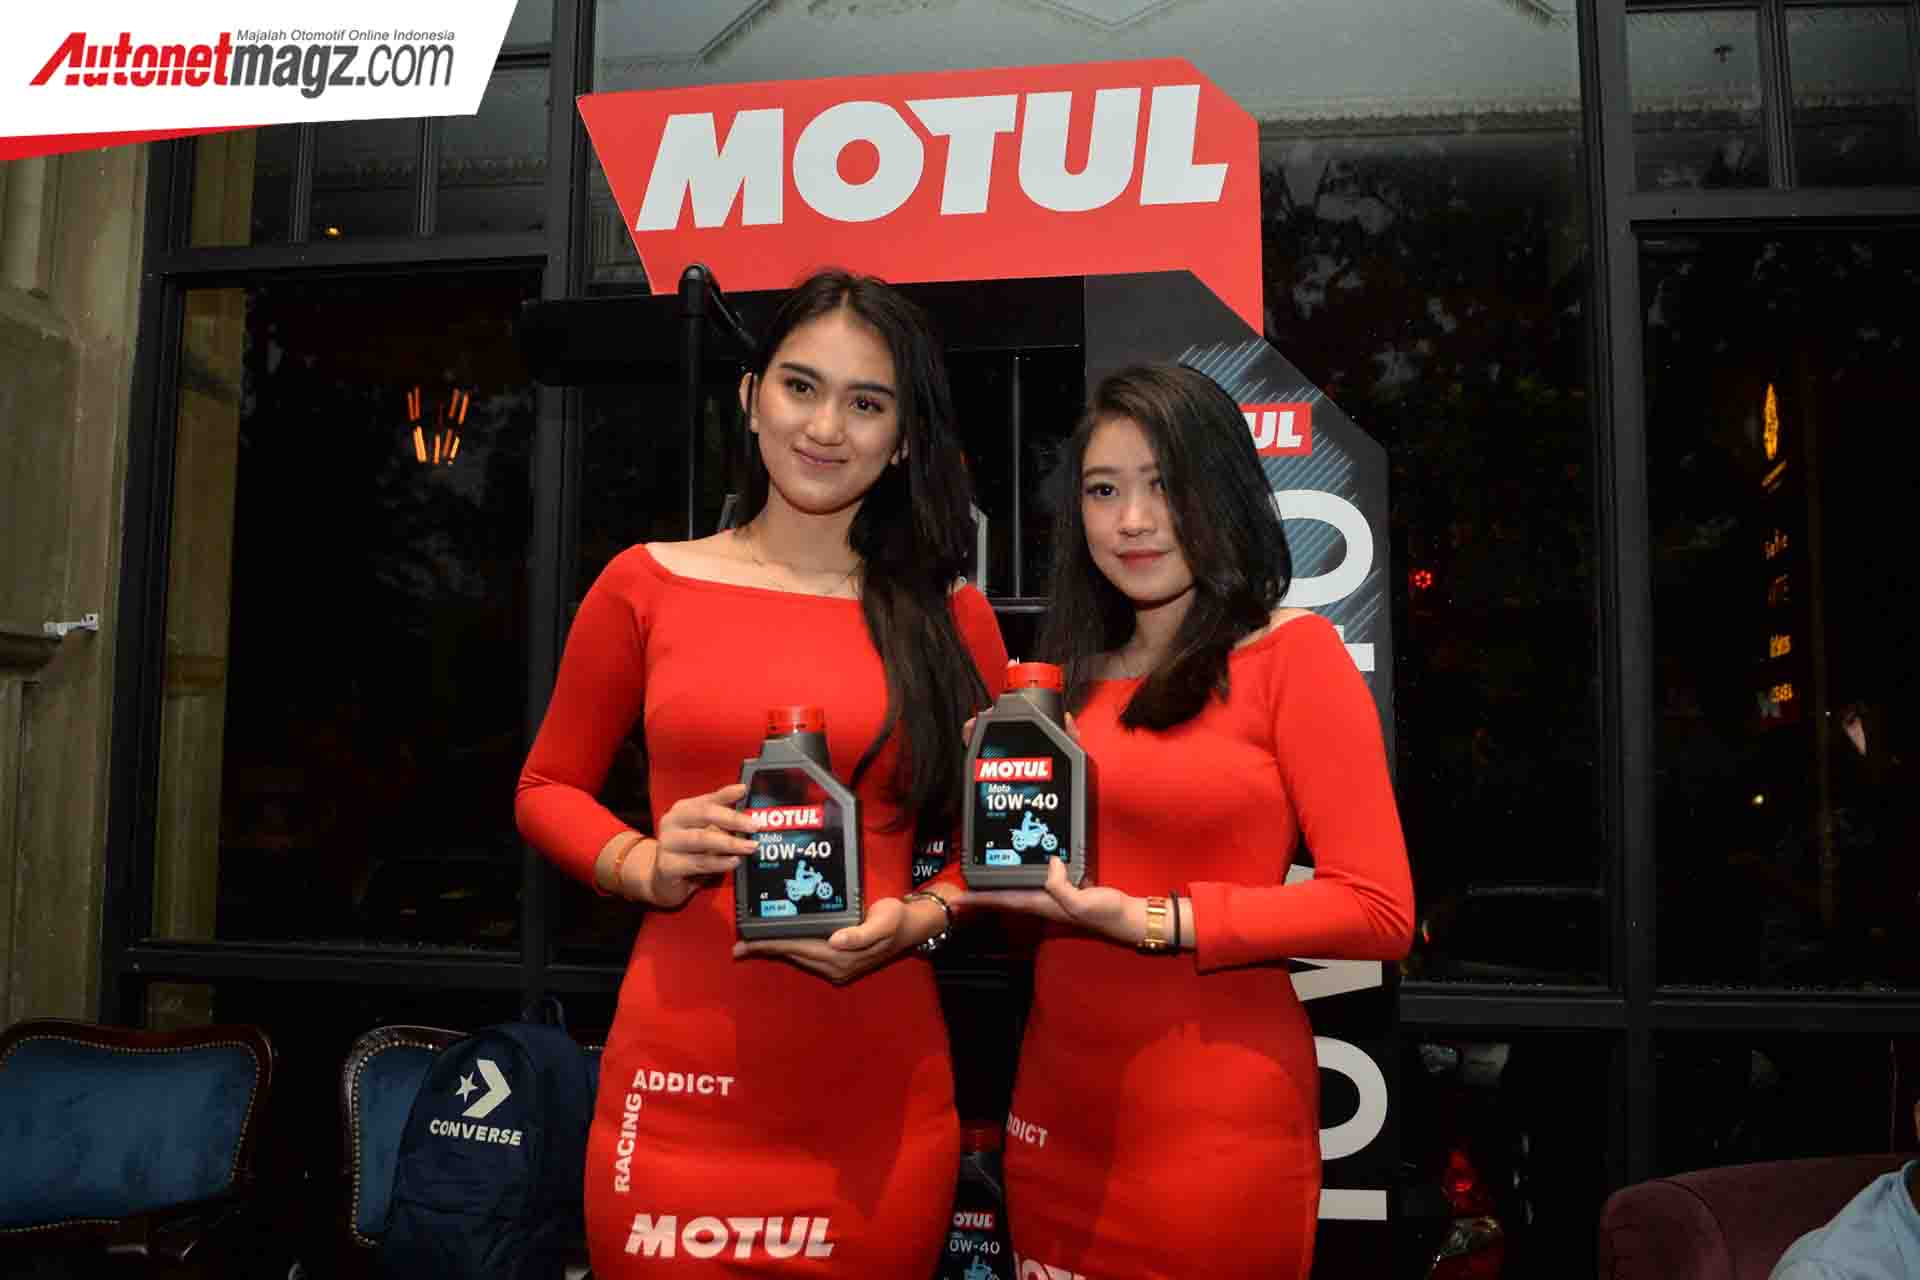 Berita, Motul Moto 4T 10W-40: Motul Perkenalkan Pelumas Motor Baru Dengan Harga Terjangkau